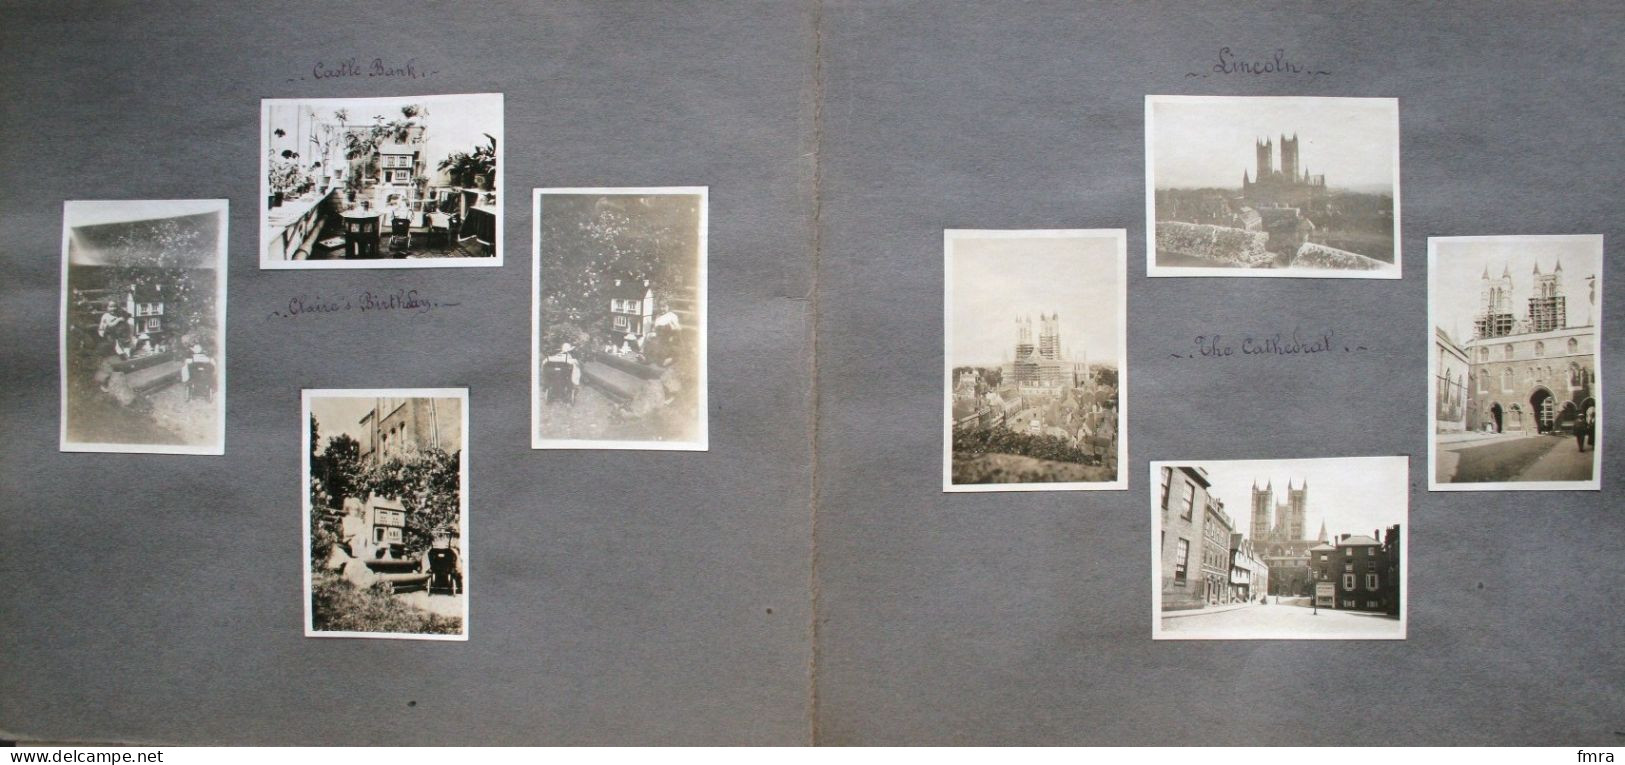 England 1928 – NOTTINGHAM  – Rufford Abbey – Londres – Ensemble de 66 photos 8,8 x 6 cm (***à voir 11 scans***) /GP87